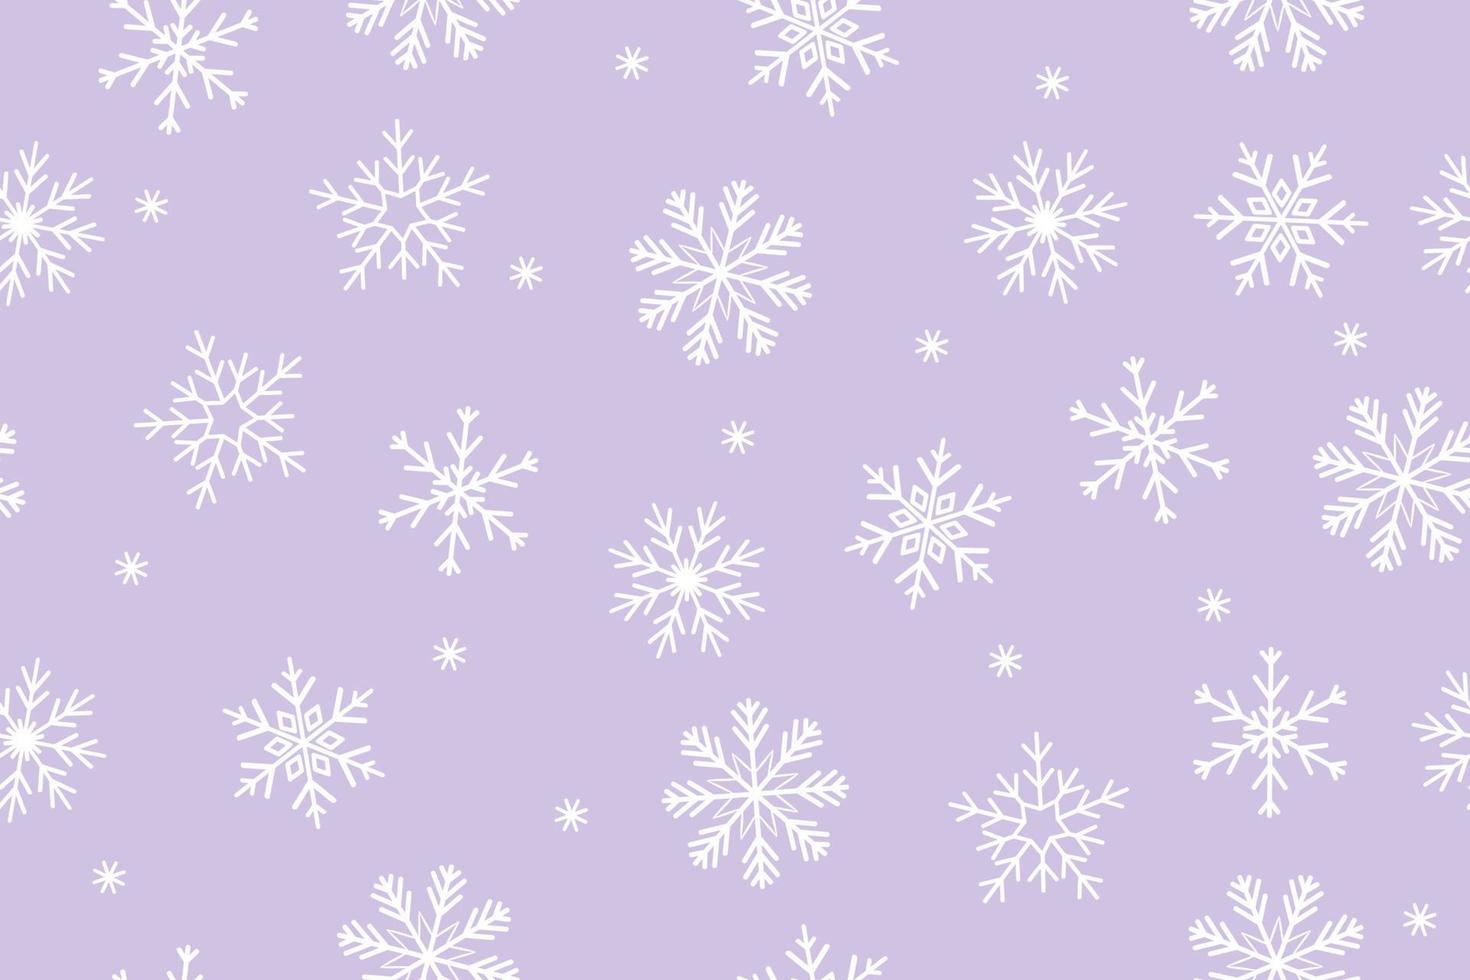 sömlös mönster med snöflingor på en lila bakgrund. vektor grafik.